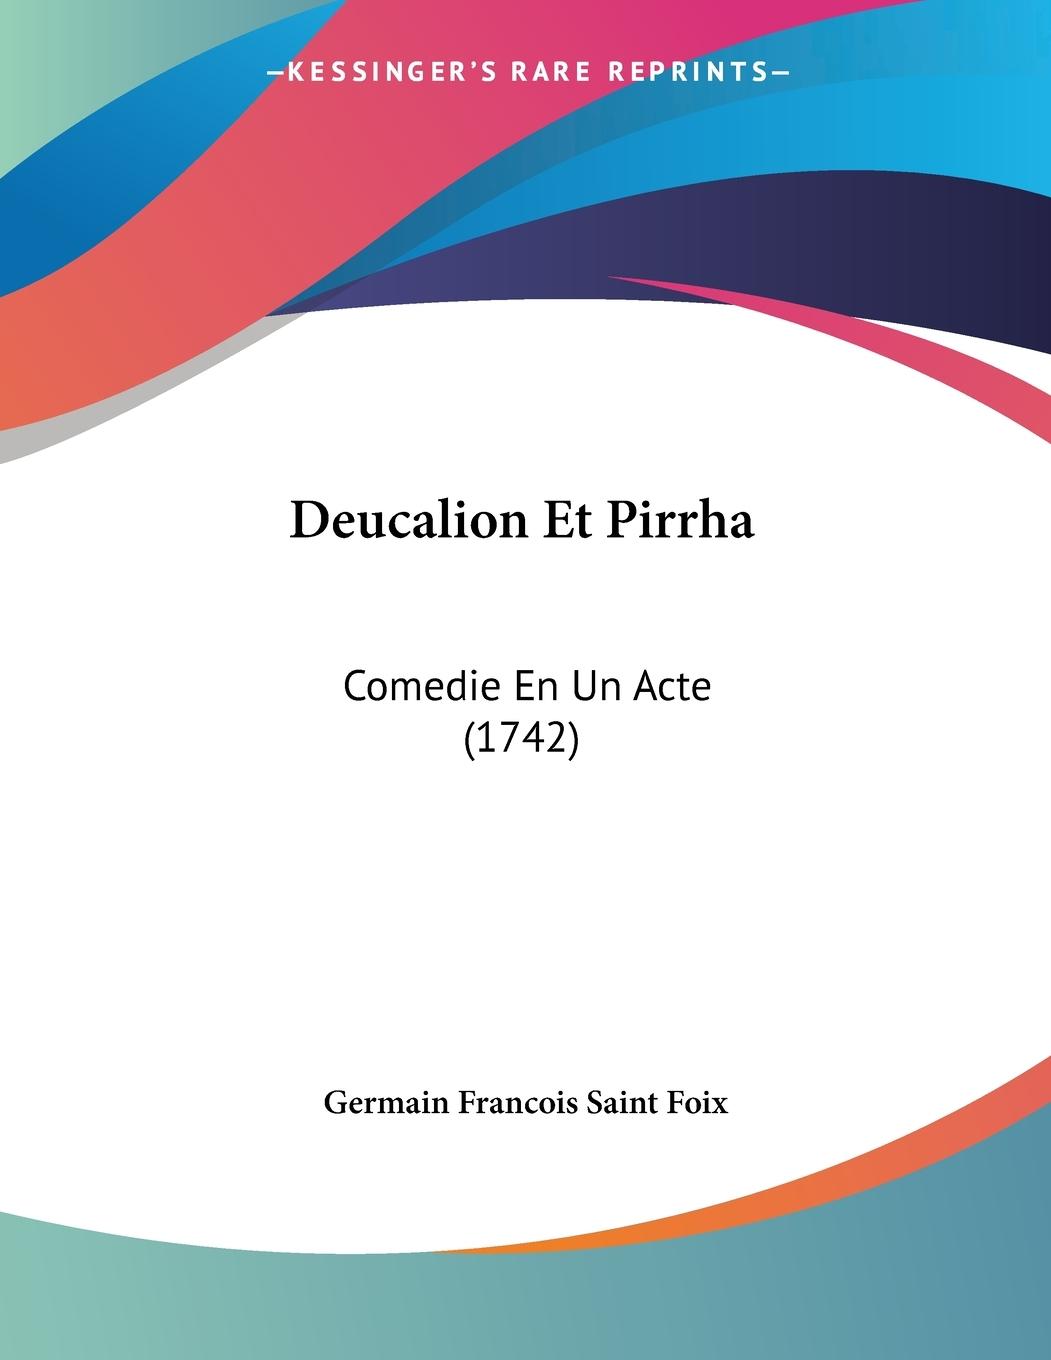 Deucalion Et Pirrha - Saint Foix, Germain Francois